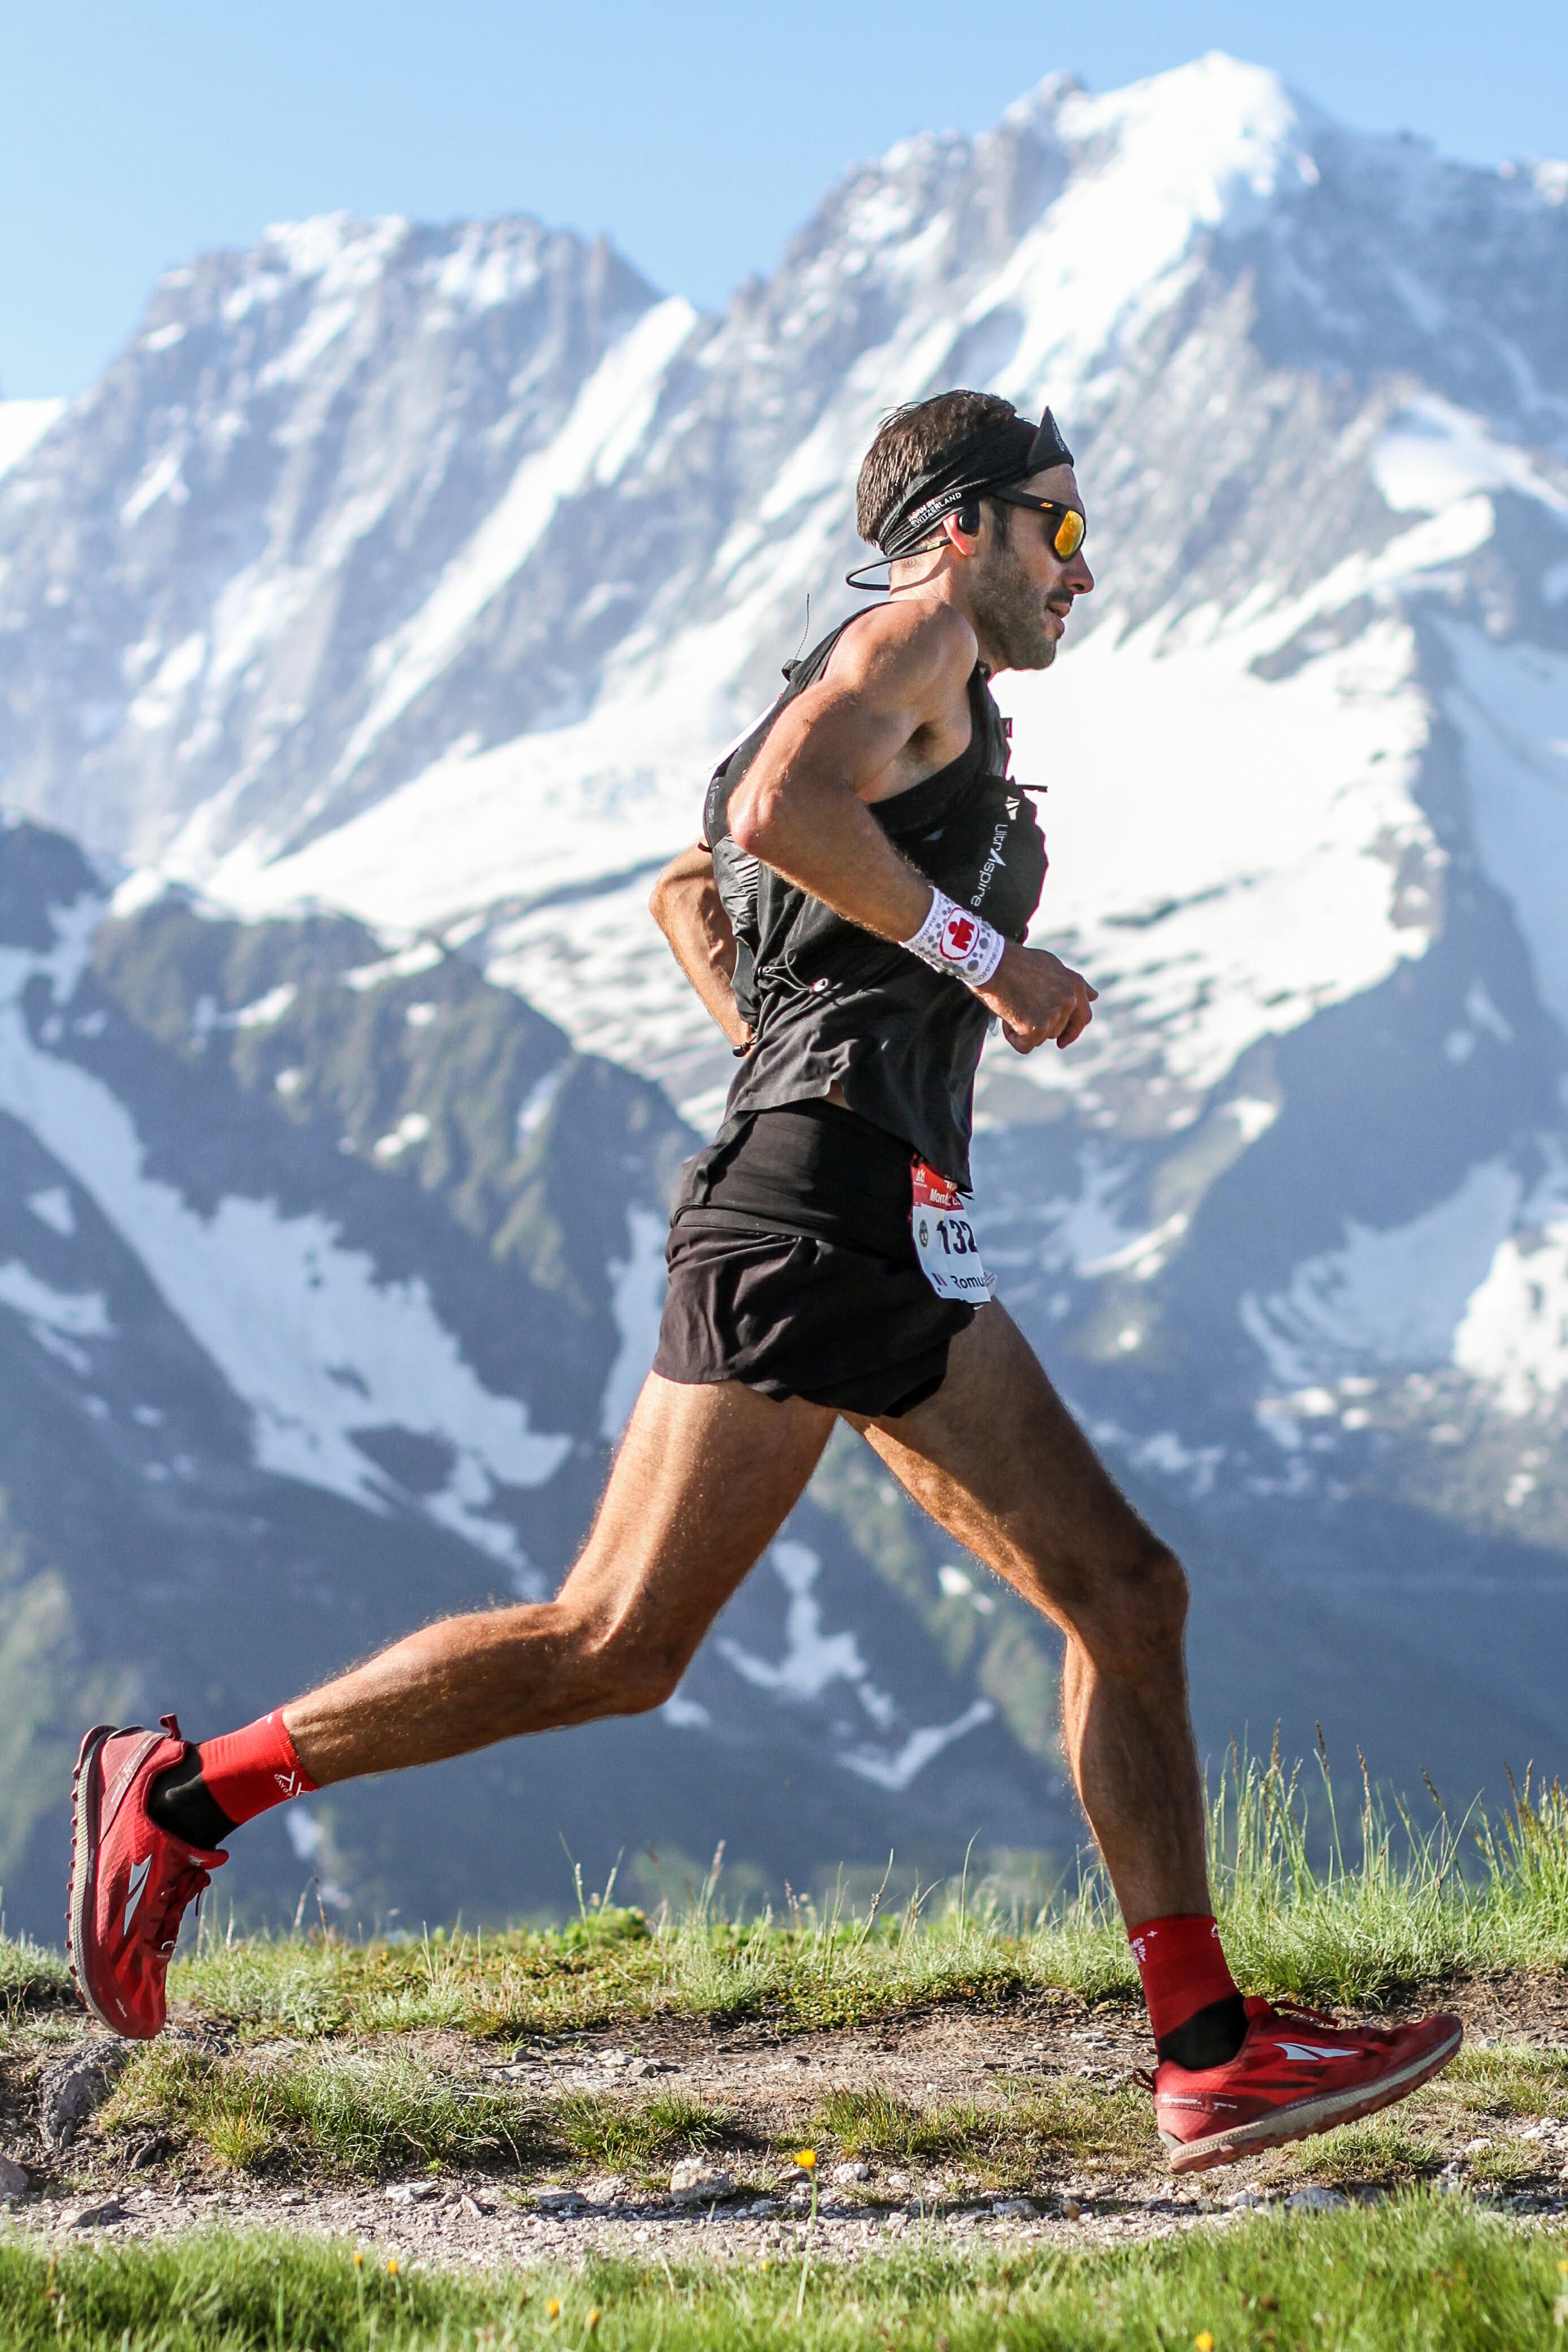 Romuald Brun at Aiguillette des Posettes during the 2019 42k du Mont Blanc (Photo: Chase Willie)